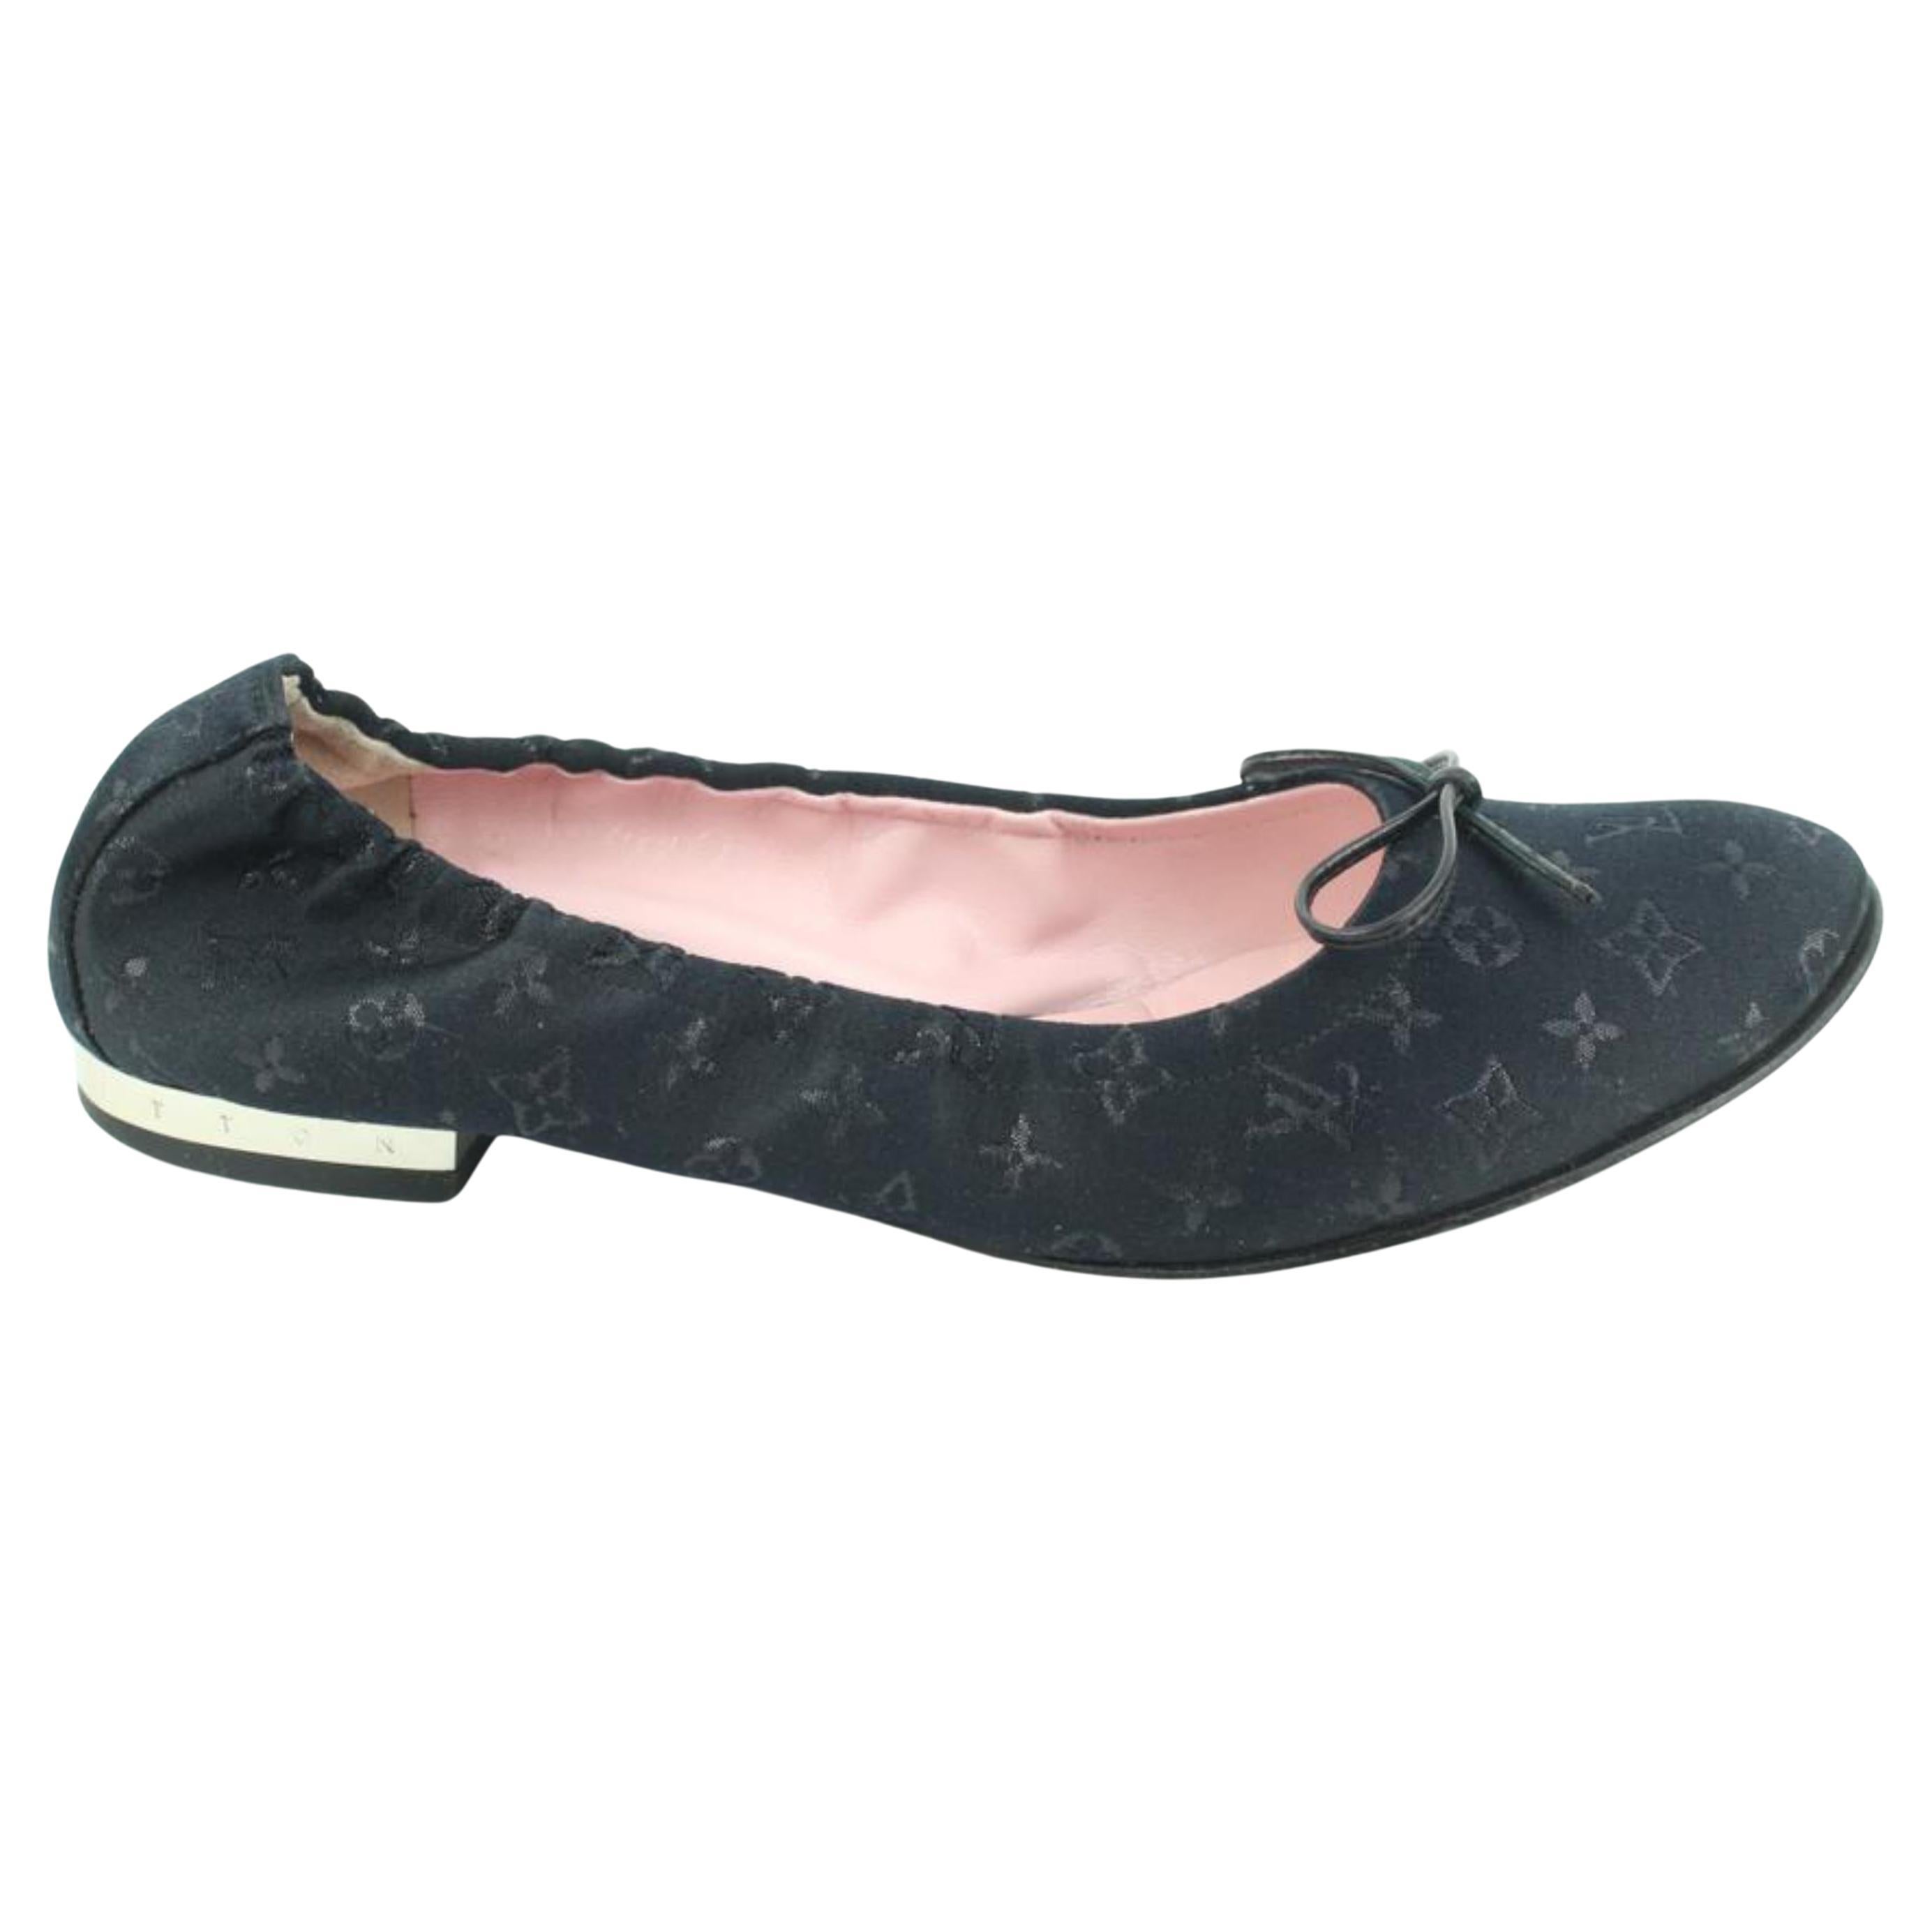 MENS US 9 Black Damier Sparkle Slip On Loafer Dress Shoe 1LV3l17